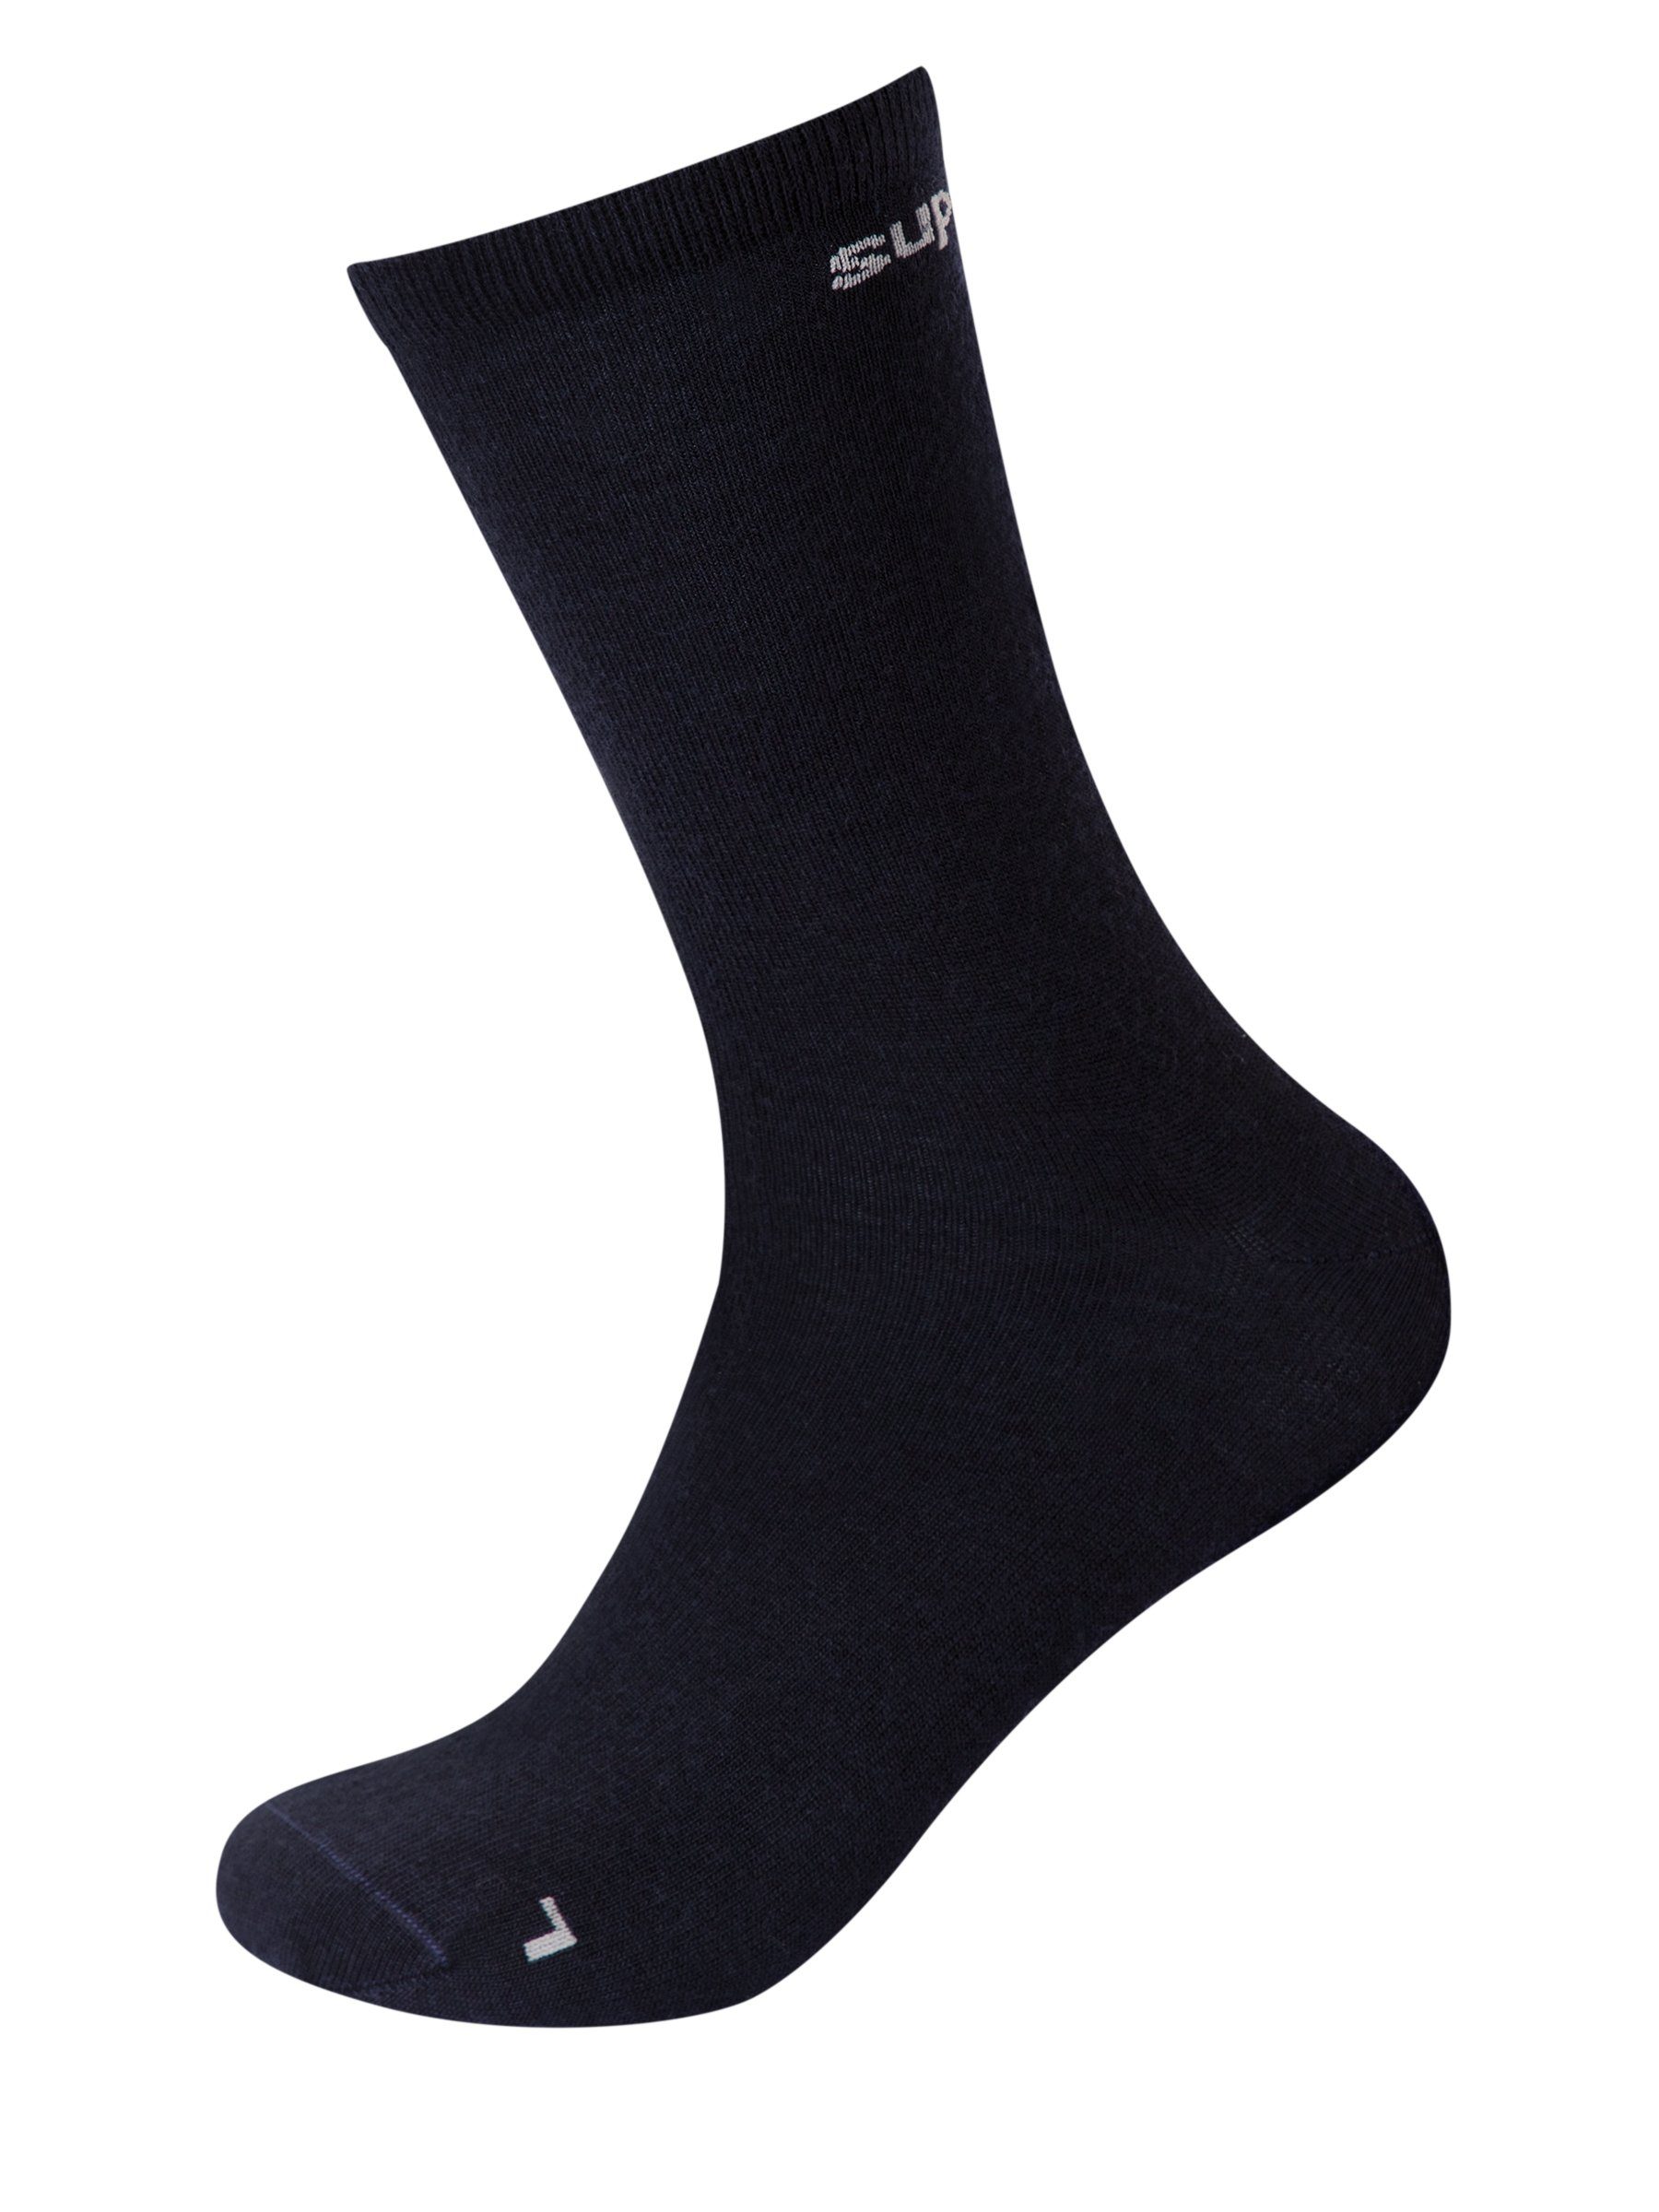 SUPER.NATURAL Sportsocken Merino Socken SN ALL DAY SOCKS (2-Paar) No smell-no worries, Merino-Materialmix Navy Blazer/Wing Grey